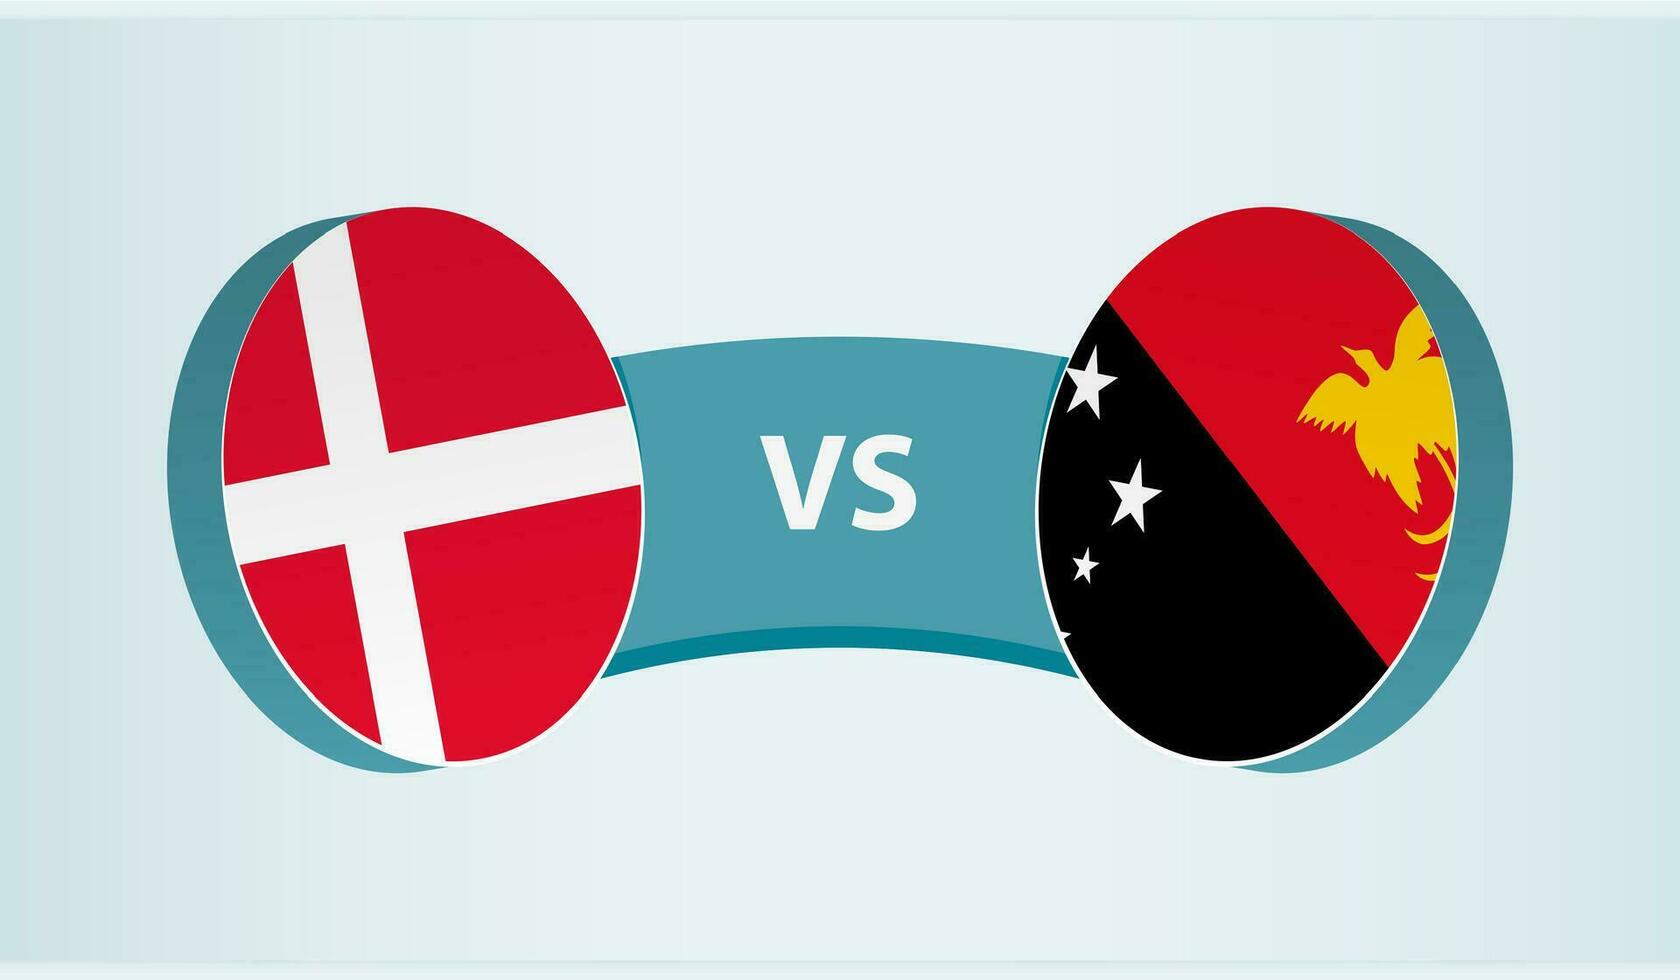 Denemarken versus Papoea nieuw Guinea, team sport- wedstrijd concept. vector